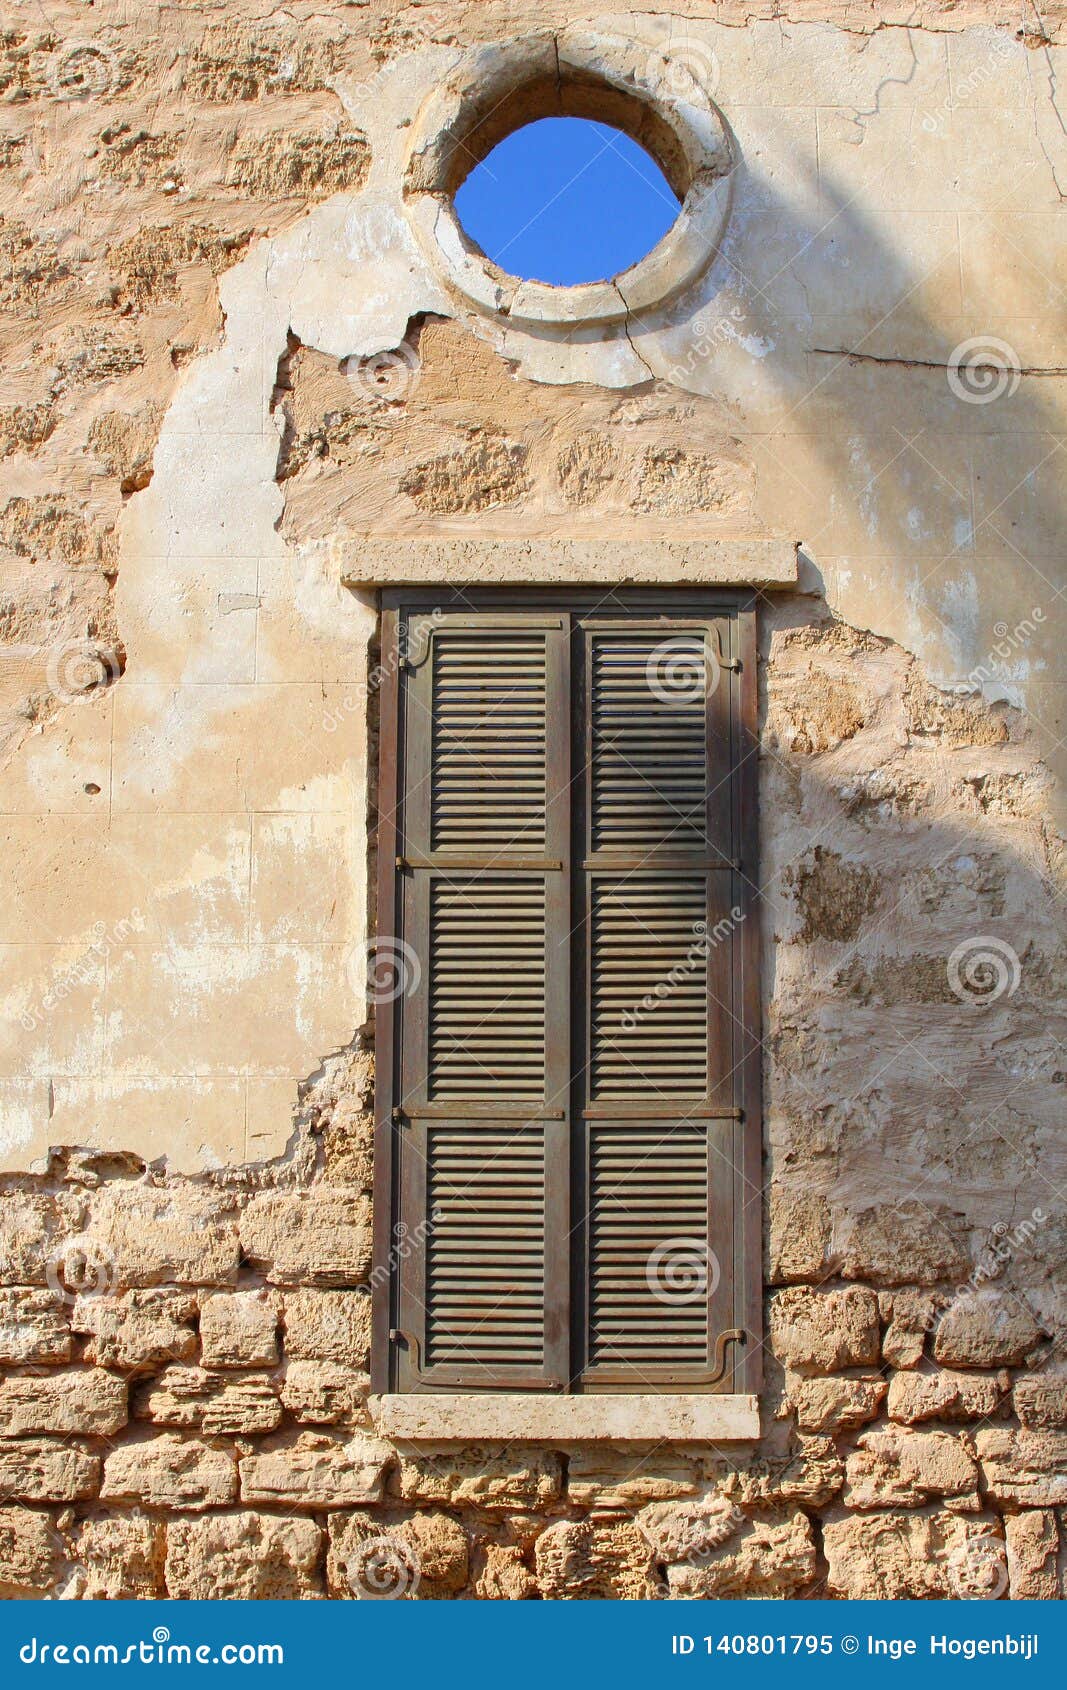 old wall shutters opening view blue sky, neve tzedek, tel aviv